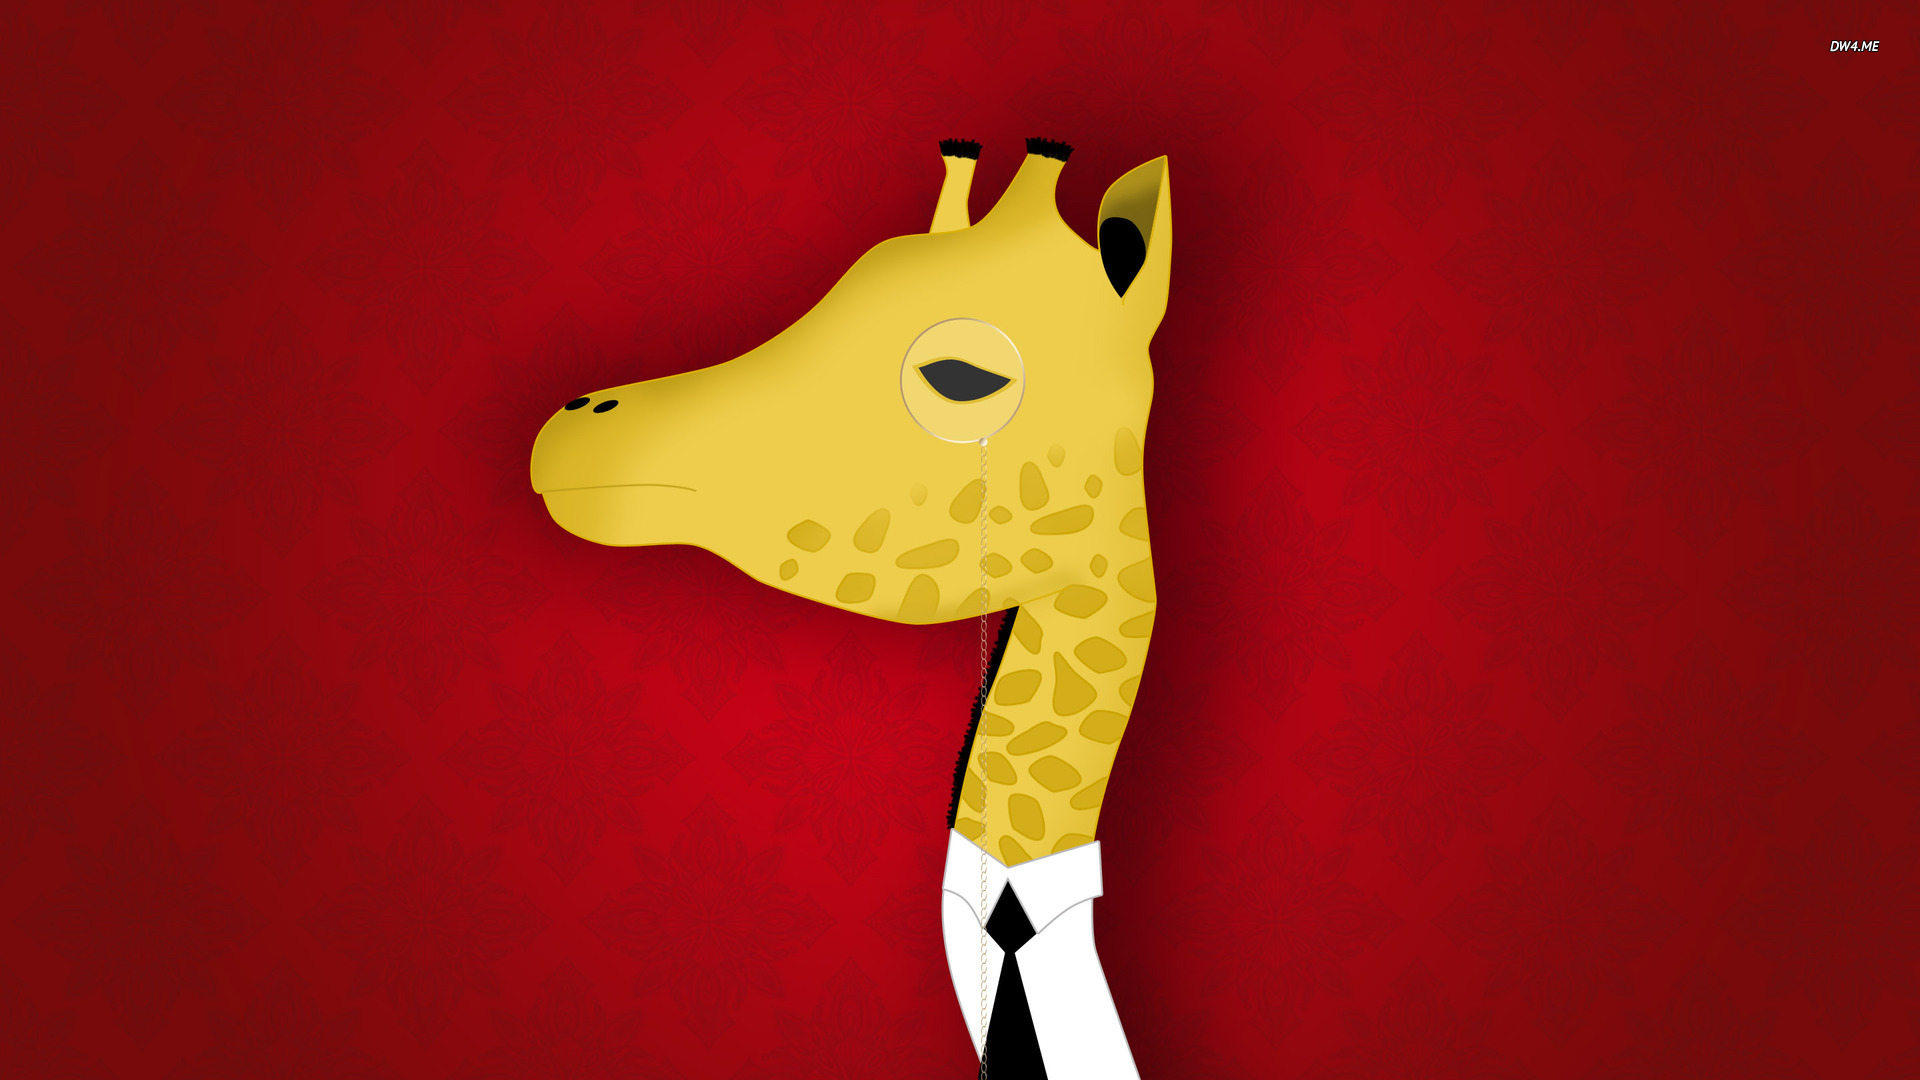 Classy Giraffe Wallpaper Vector